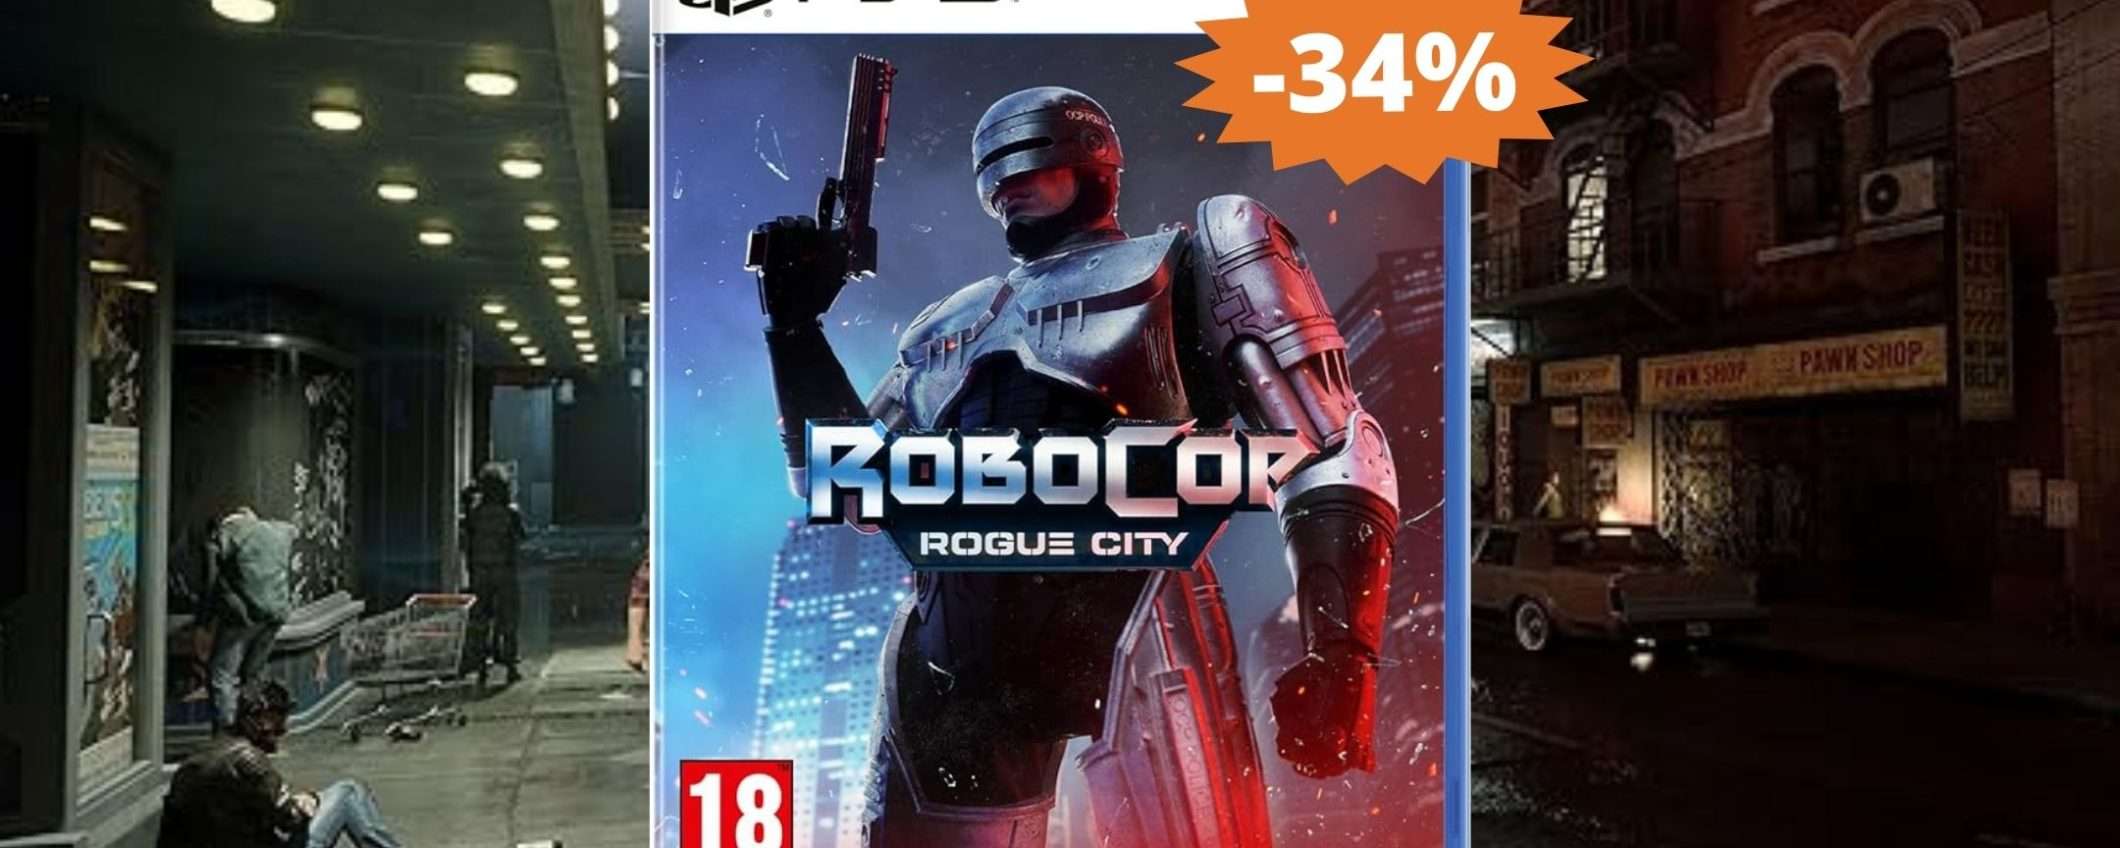 RoboCop Rogue City per PS5: MEGA sconto del 34% su Amazon